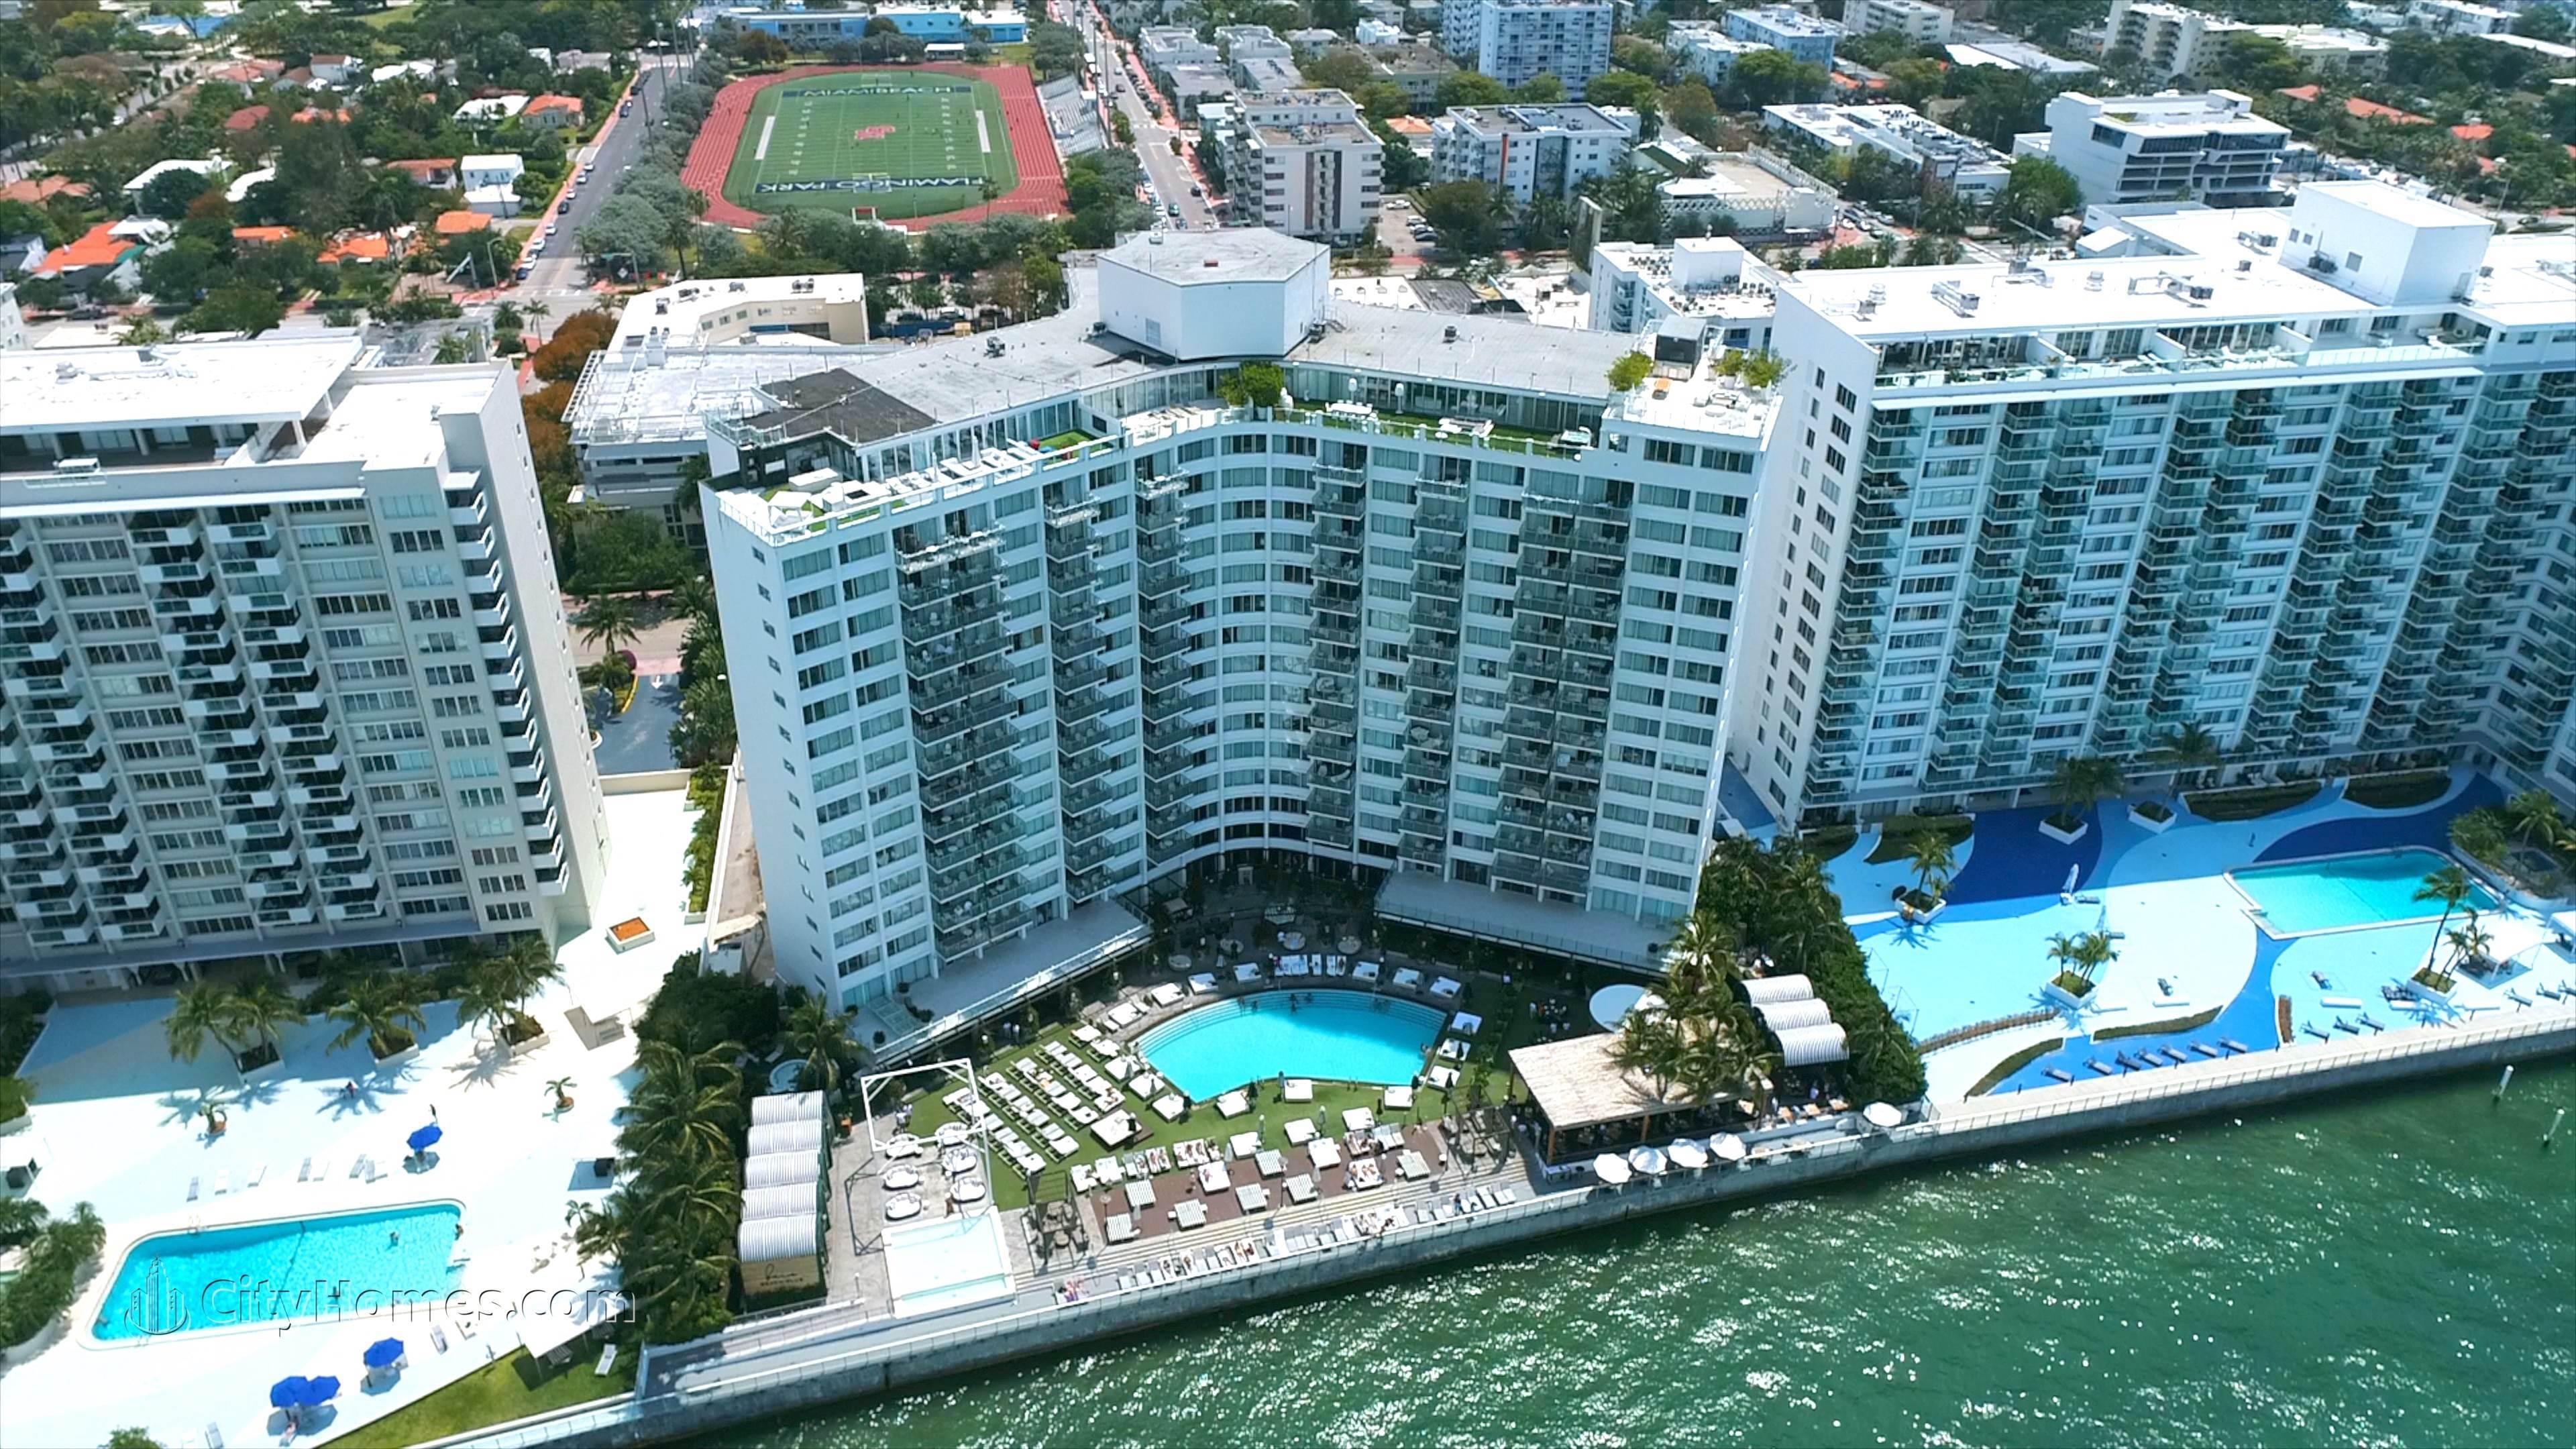 MONDRIAN SOUTH BEACH gebouw op 1100 West Avenue, Flamingo / Lummus, Miami Beach, FL 33139